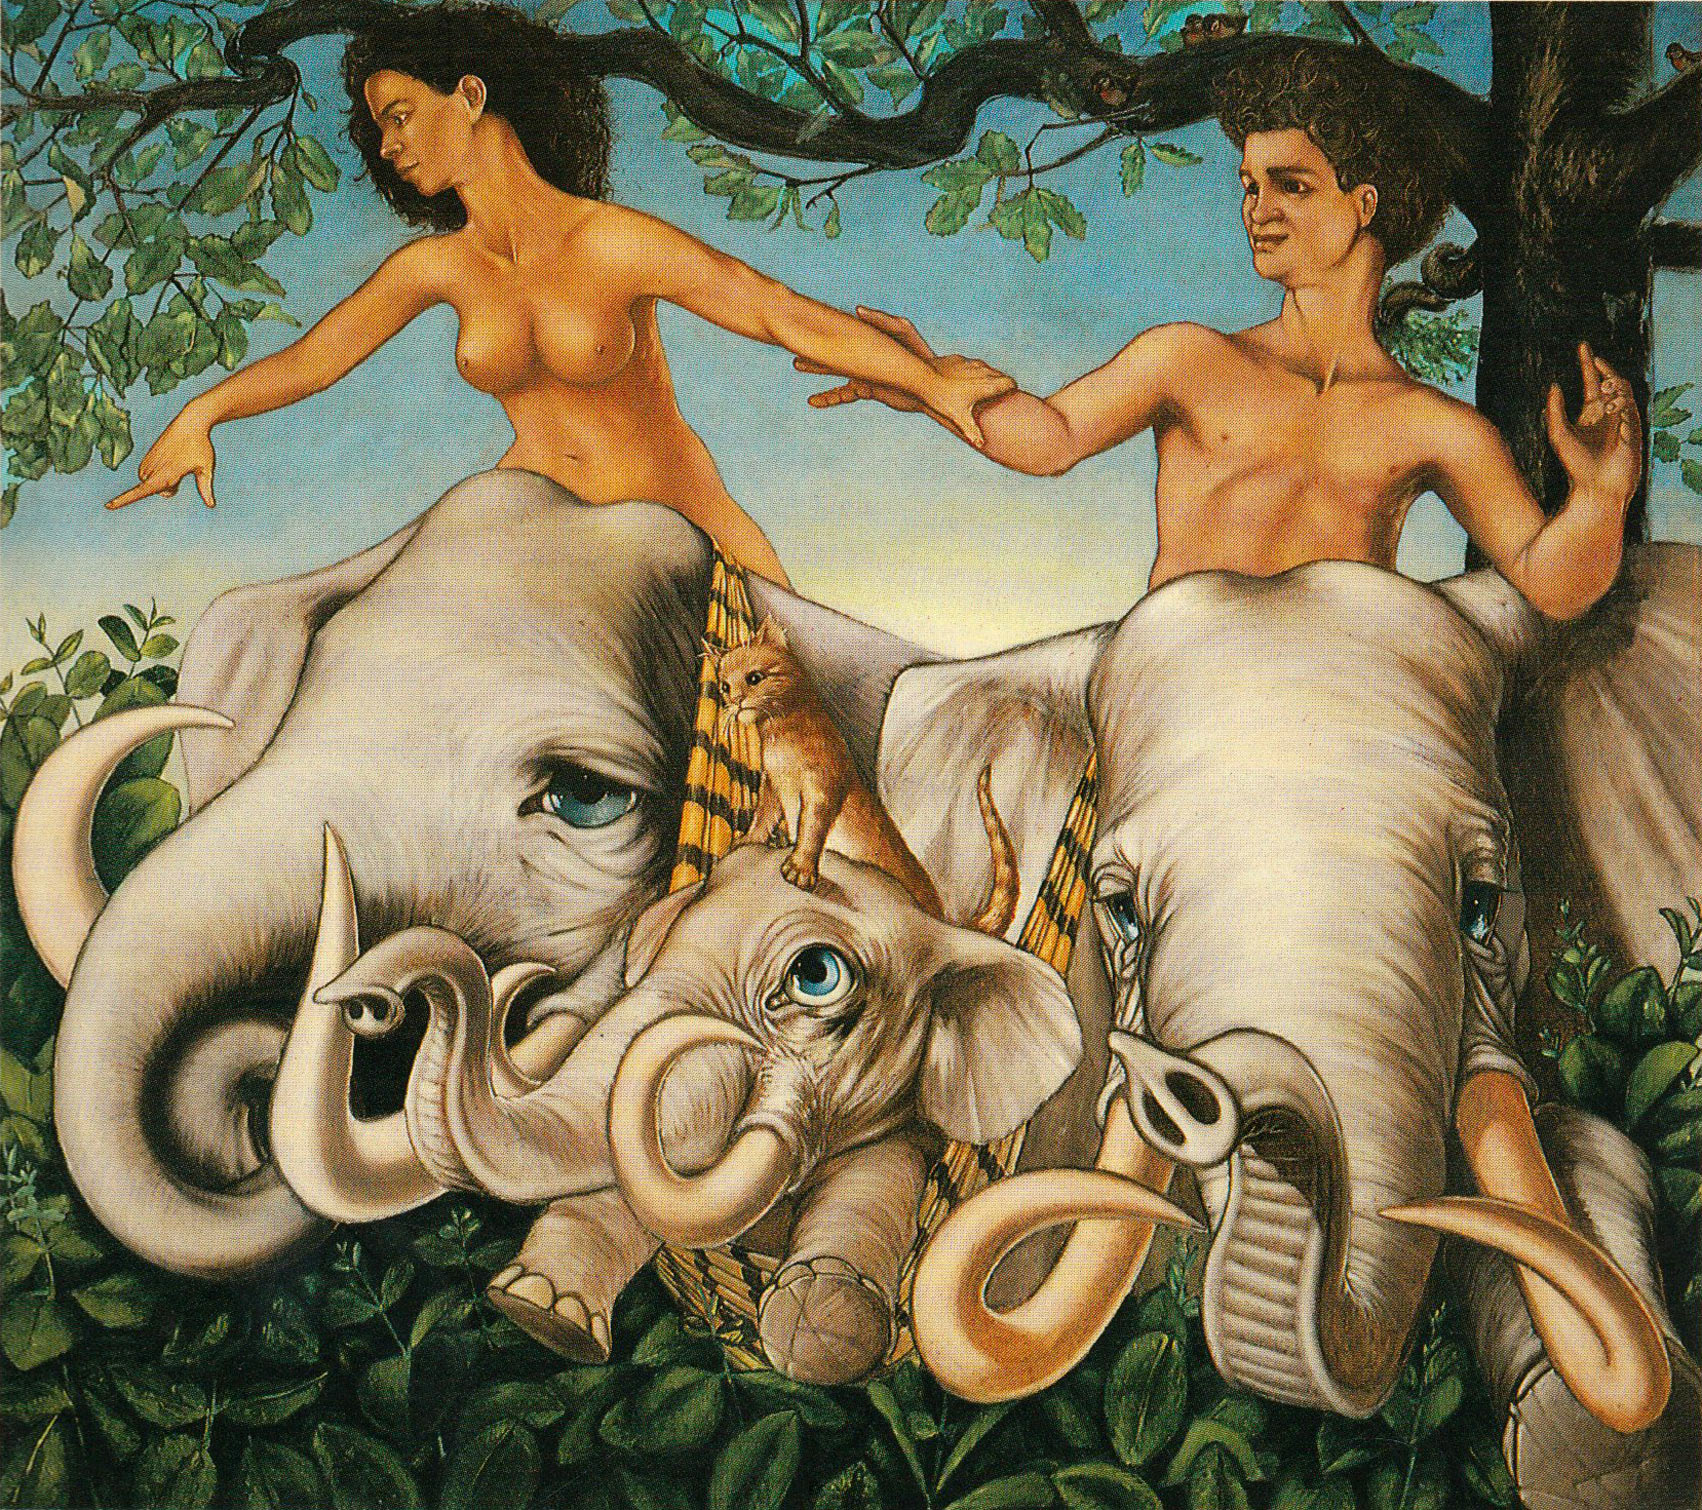 Bondissant d'une haie de grosses feuilles, deux éléphants aux longues défenses recourbées portant un éléphanteau dans un hamac tendu entre eux, sur la tête duquel est dressé un petit chat roux. Les éléphants sont montés par une femme et un homme, nus, se tenant par la main. La femme montre du doigt quelque chose hors du cadre. Sur le ciel bleu se découpe un arbre et sur ses branches, des rouge-gorges regardent la scène. Les éléphants ont les yeux bleus.